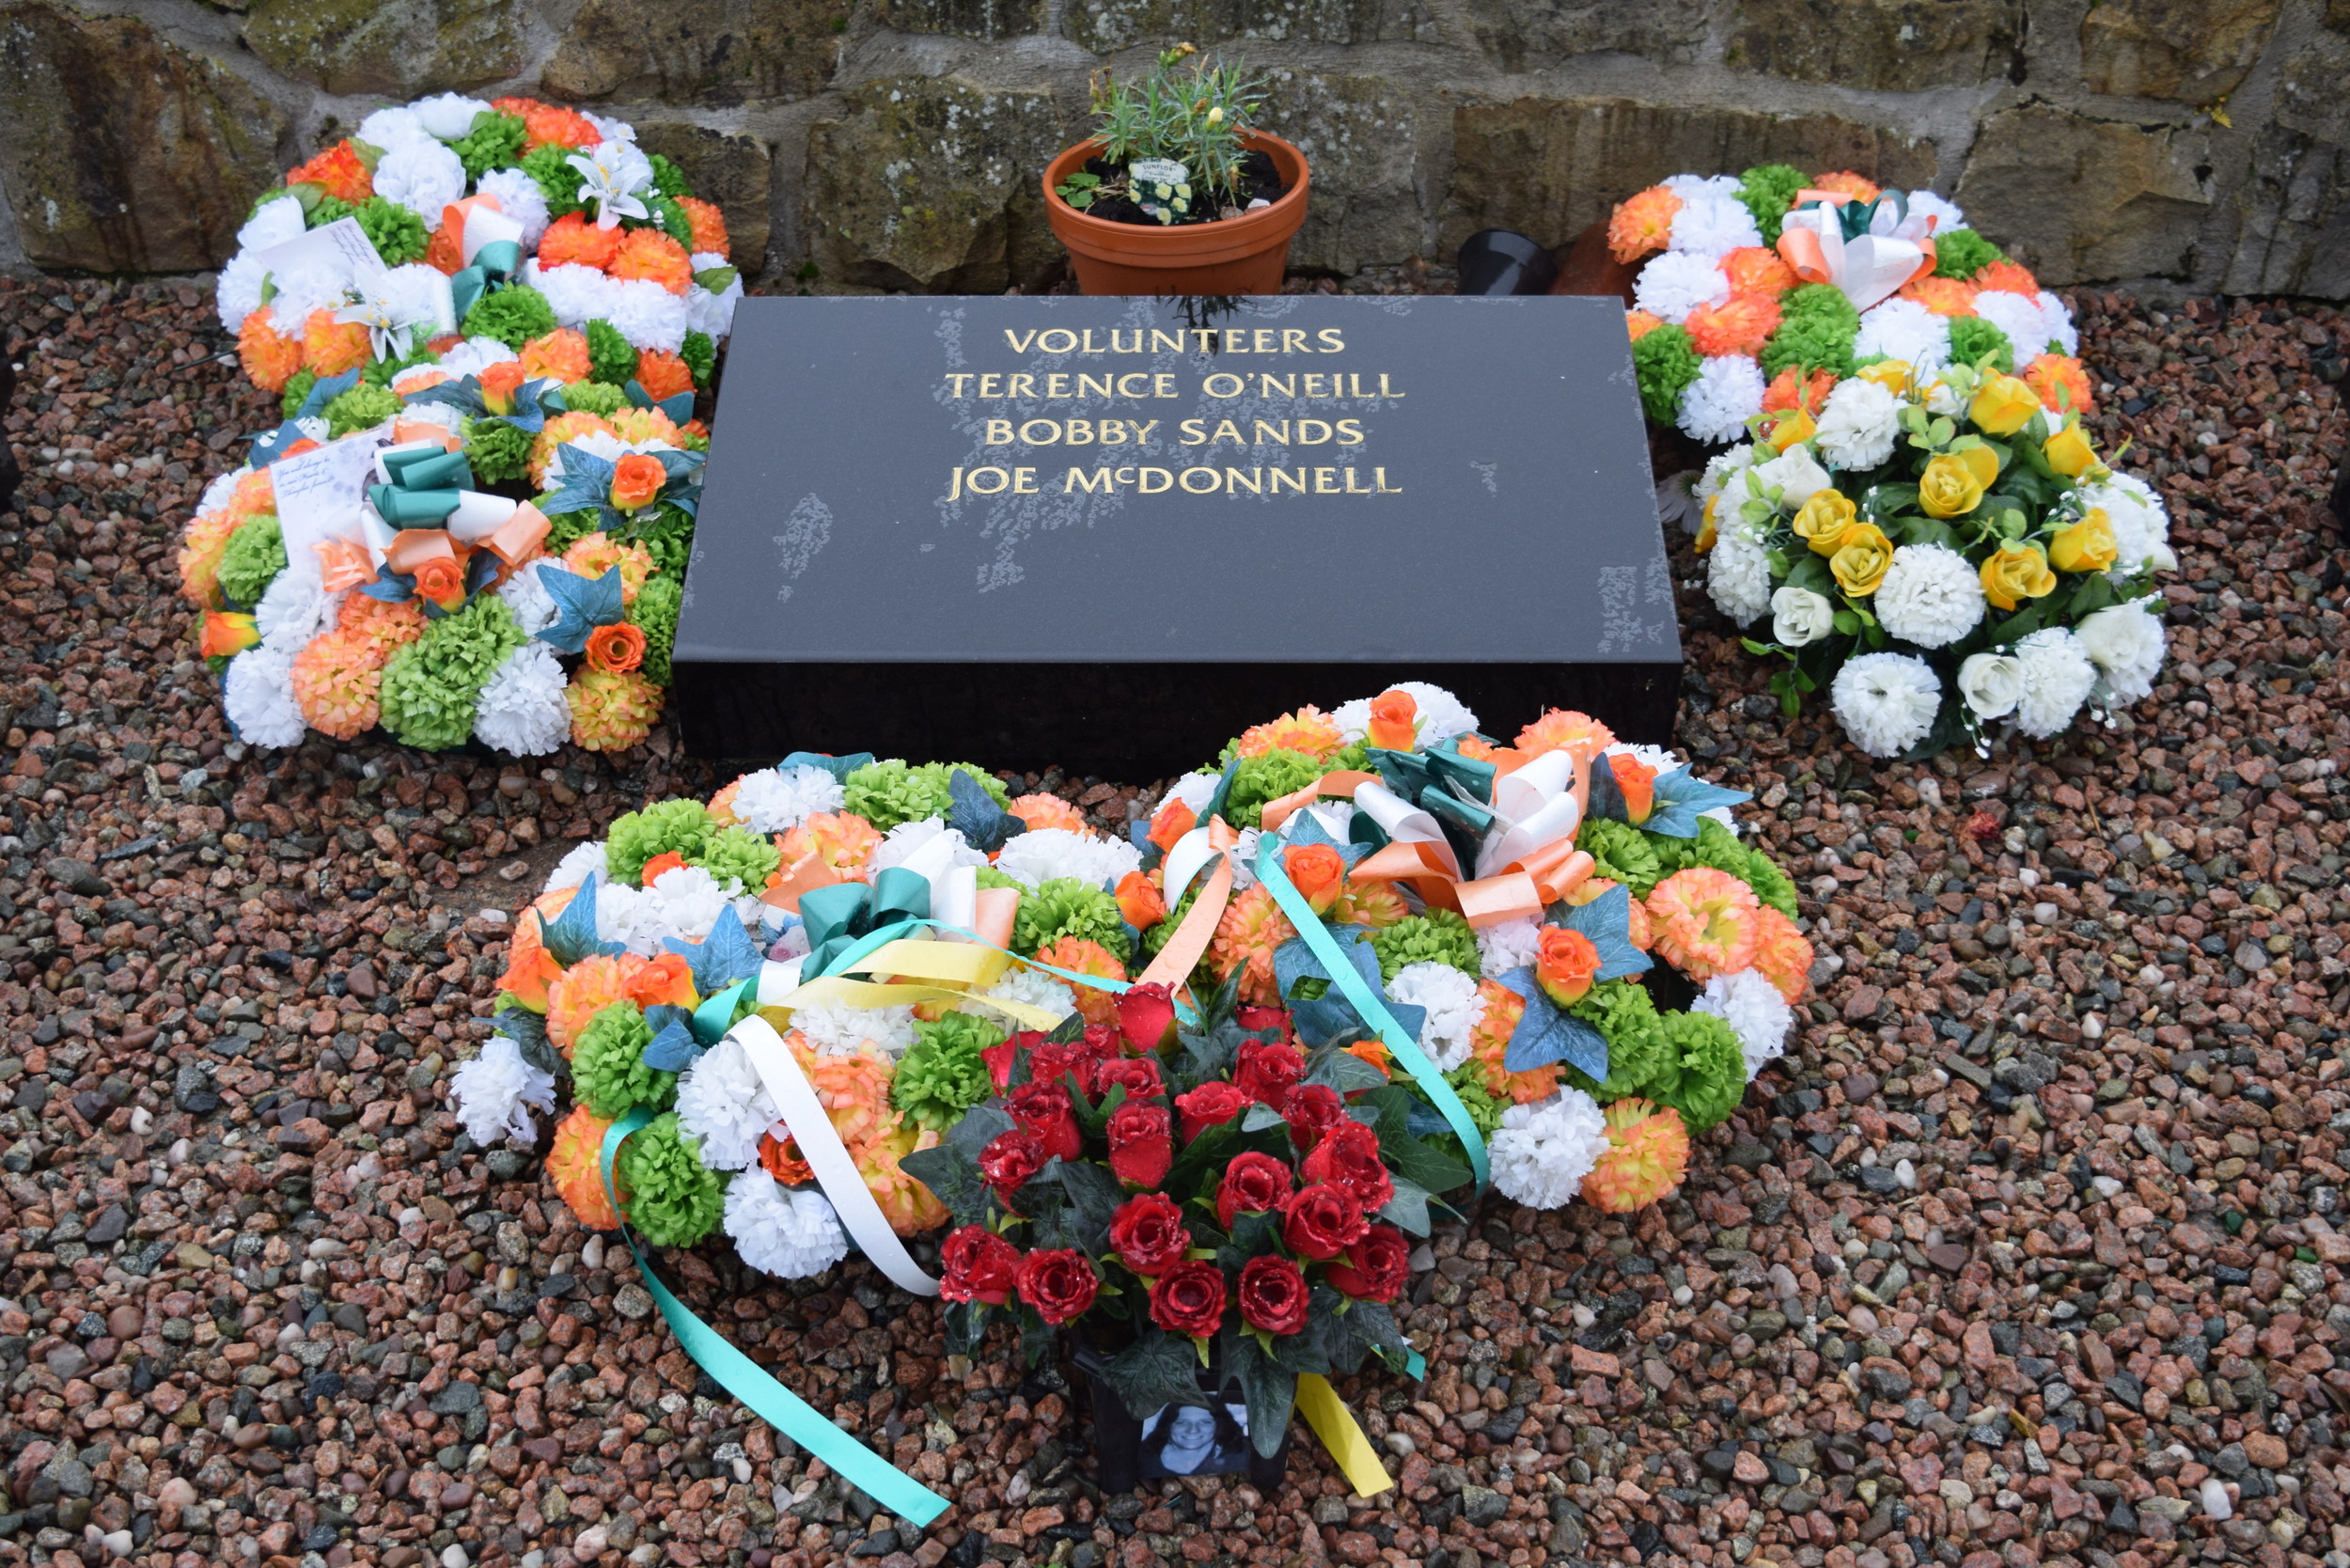 Grave of Bobby Sands, Milltown Cemetery, Belfast